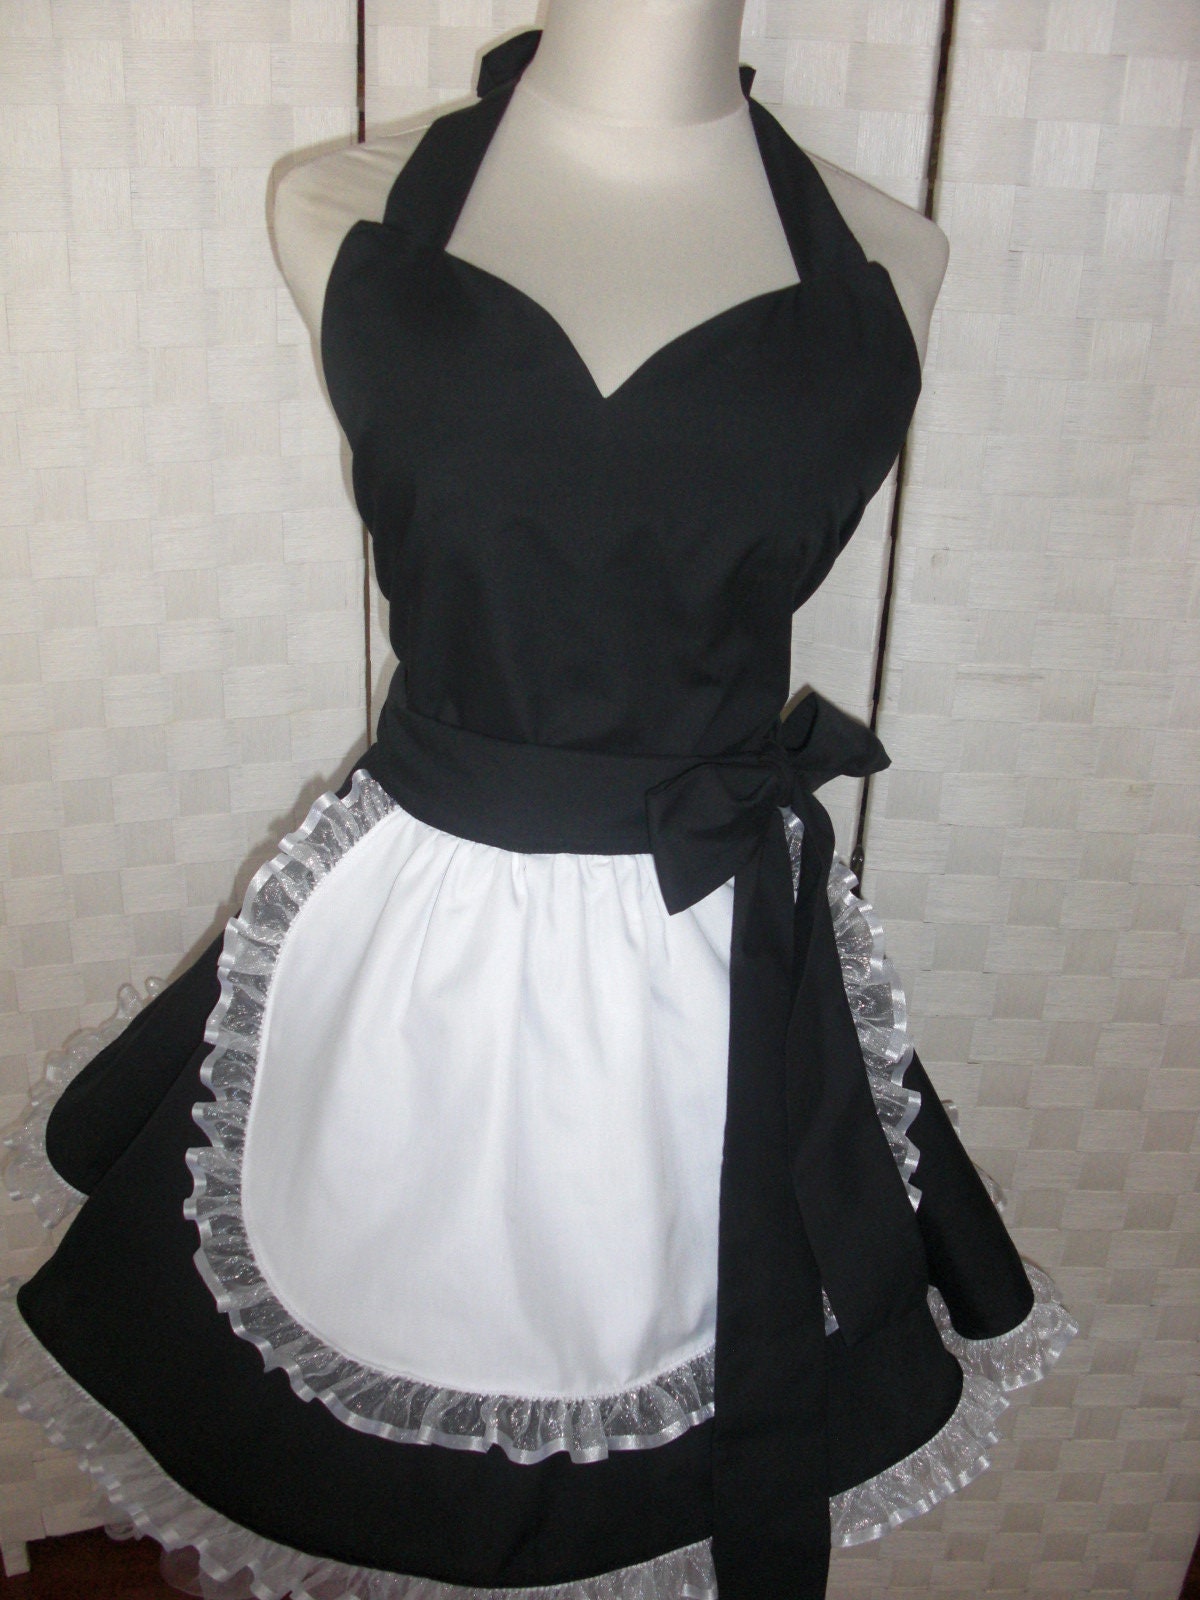  KIOFXFCB Bodysuit Lingerie Plus Size Maid Outfit for